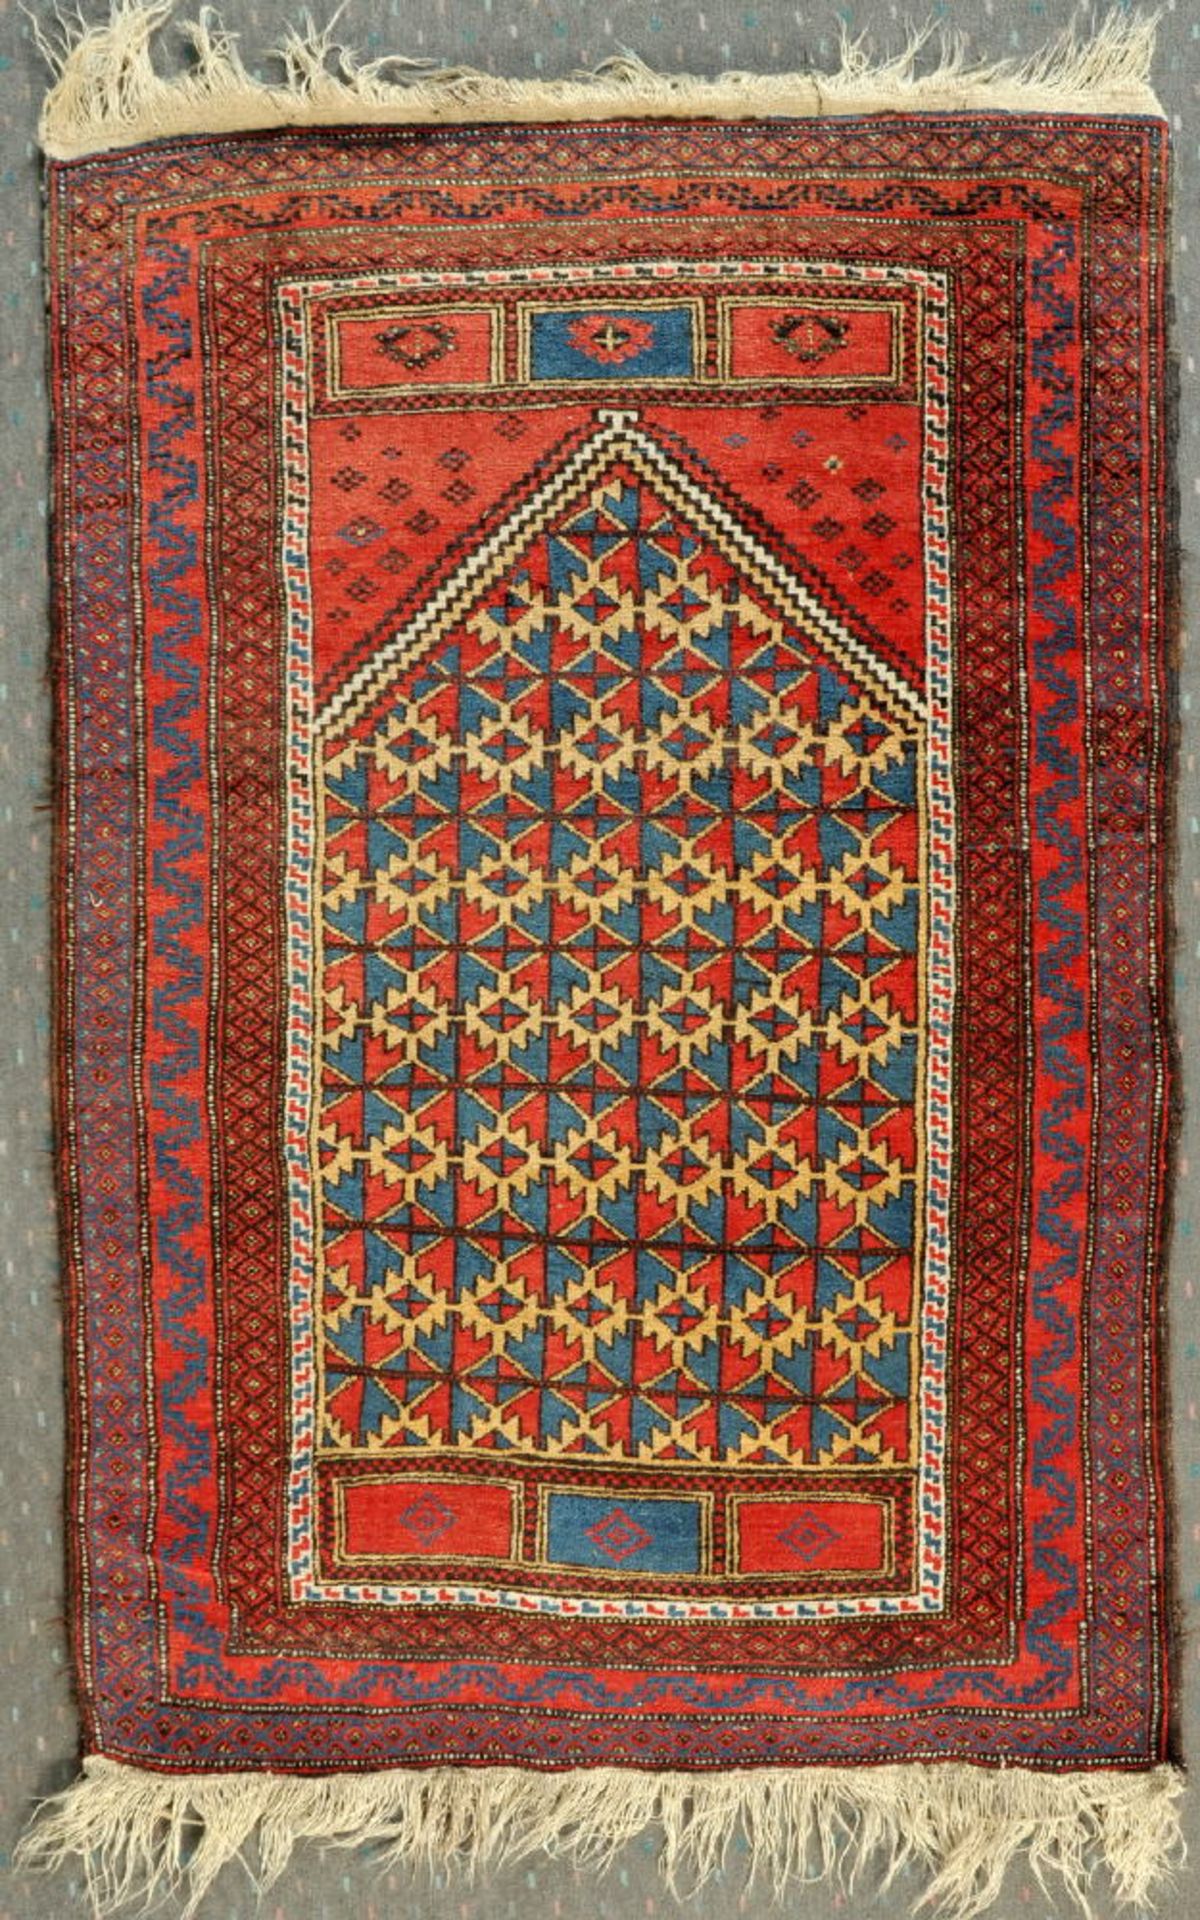 Gebets-Belutsch, Persien, 99 x 148 cmWolle, mehrfarb. Gebetsgiebel mit stilis. Musterungen,